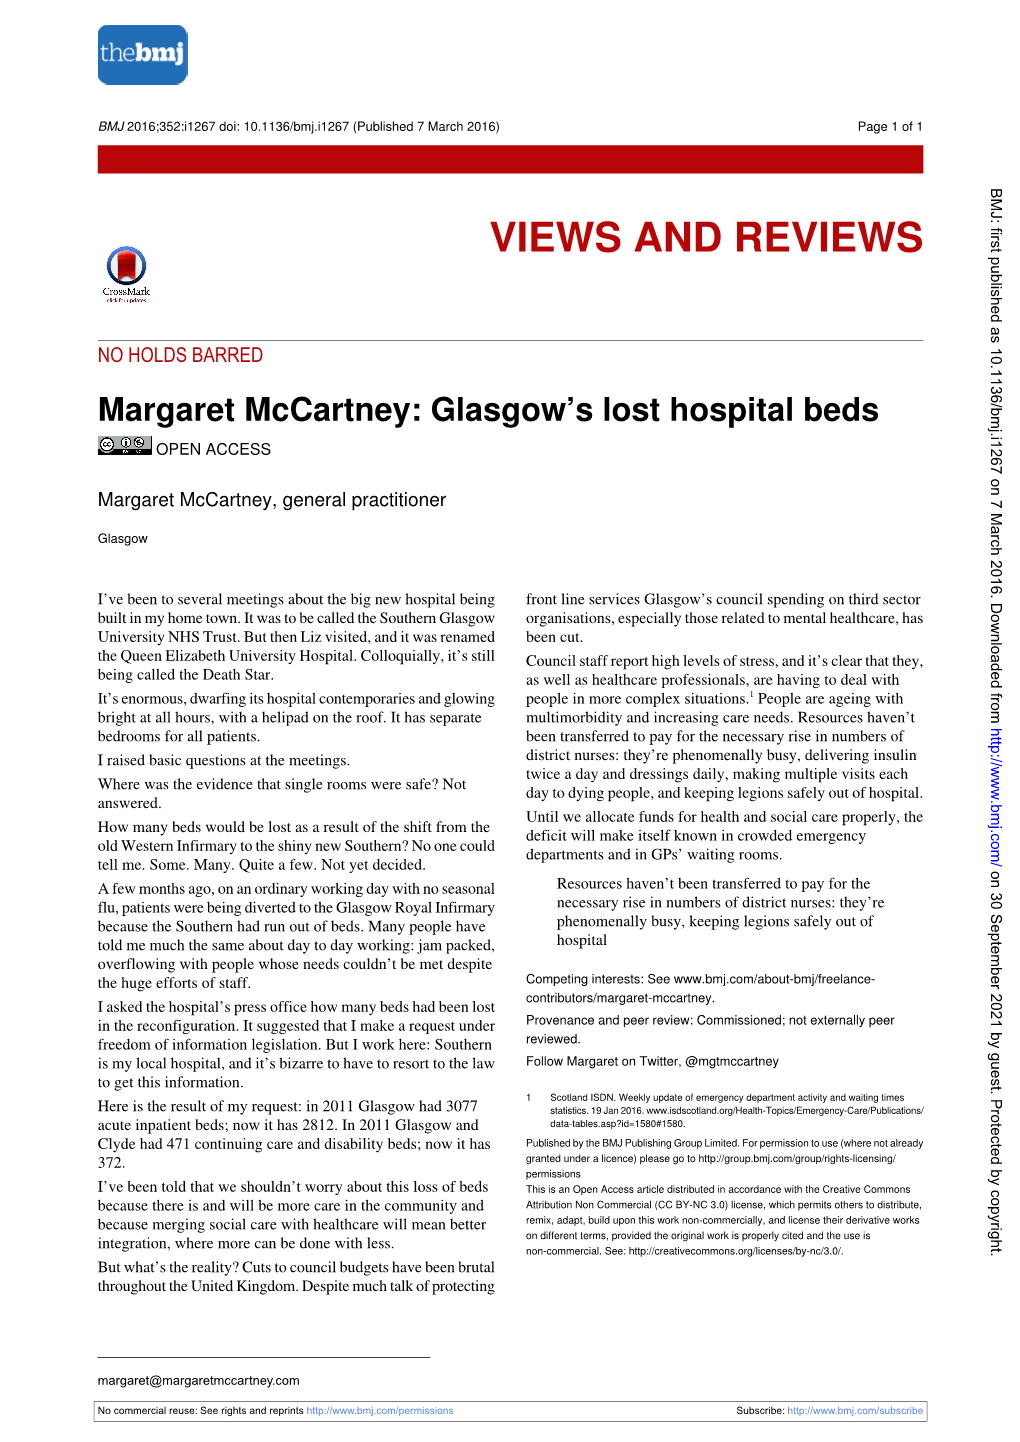 Margaret Mccartney: Glasgow's Lost Hospital Beds